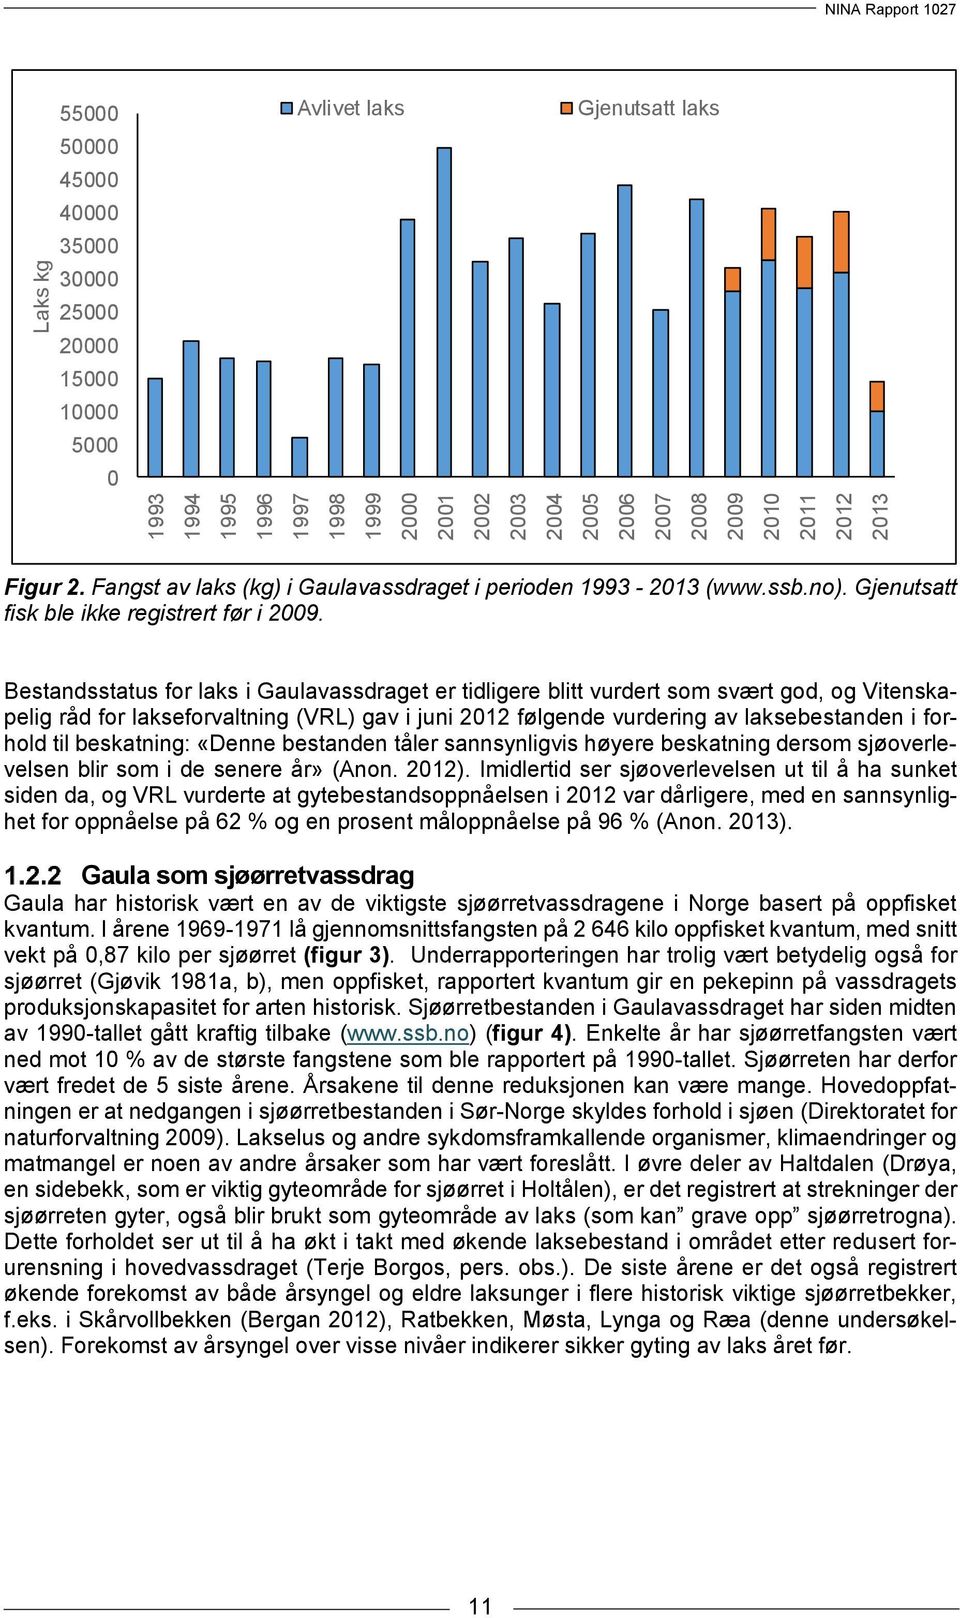 Bestandsstatus for laks i Gaulavassdraget er tidligere blitt vurdert som svært god, og Vitenskapelig råd for lakseforvaltning (VRL) gav i juni 2012 følgende vurdering av laksebestanden i forhold til